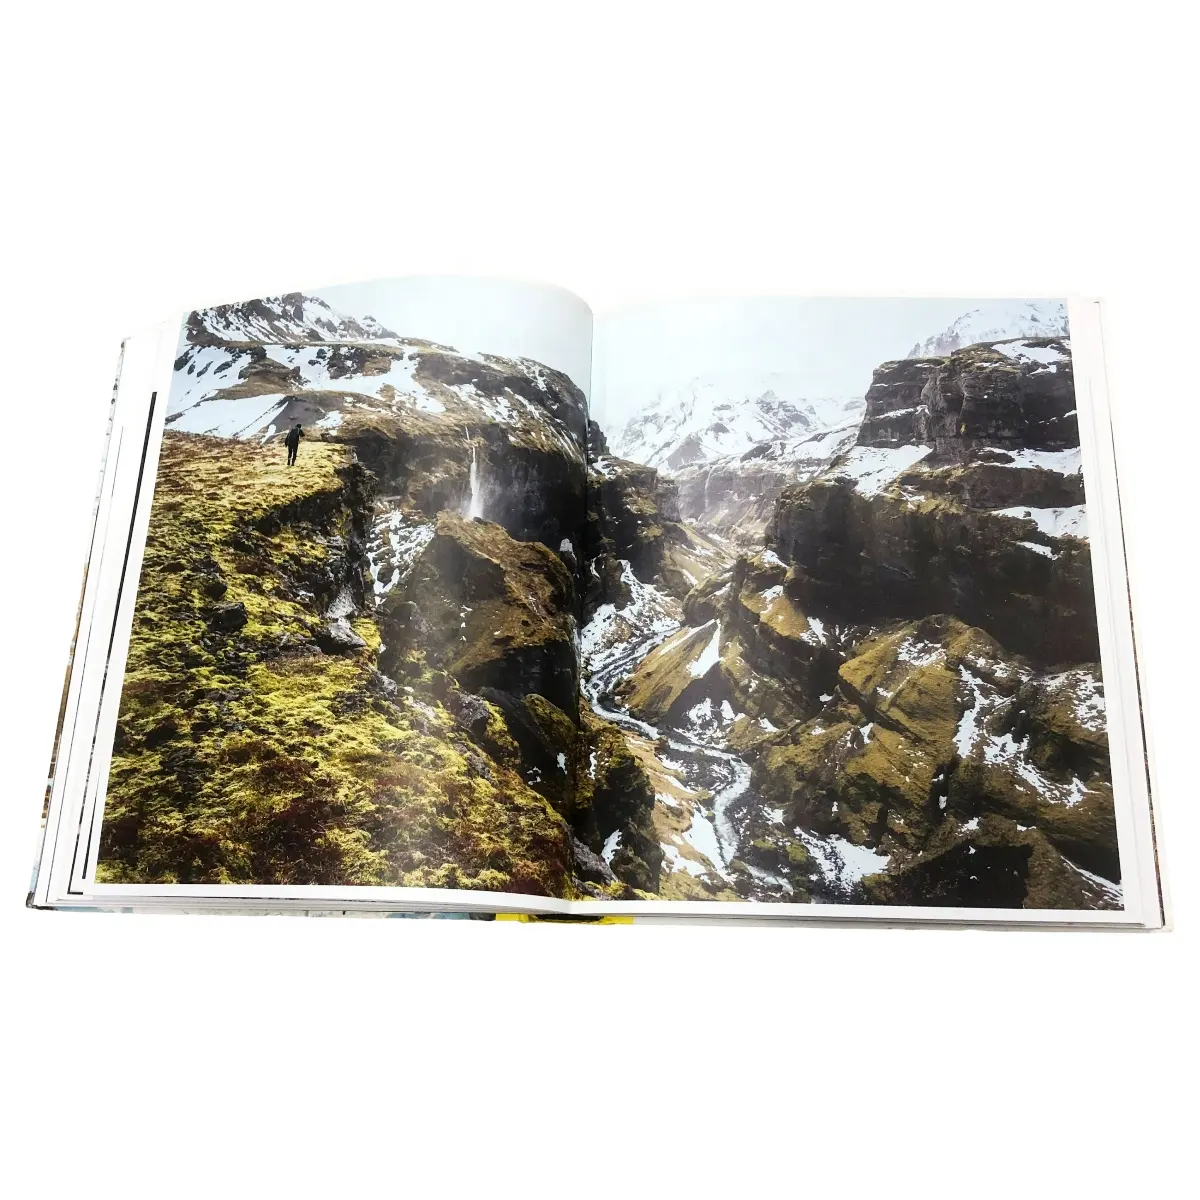 Parlak dergi baskısı yüksek kaliteli yetişkin fotoğraf kitabı baskı